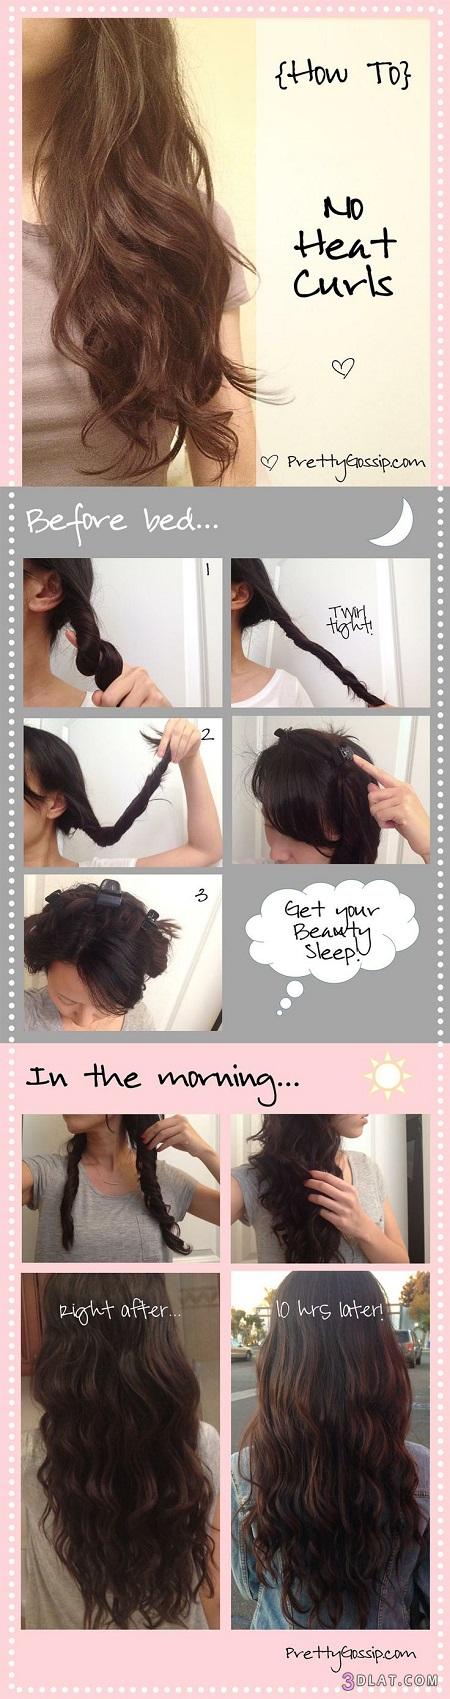 كيف تجعلين شعرك مجعدا بدون مصفف شعر  .طريقة سهل لجعل شعرك مجعدا